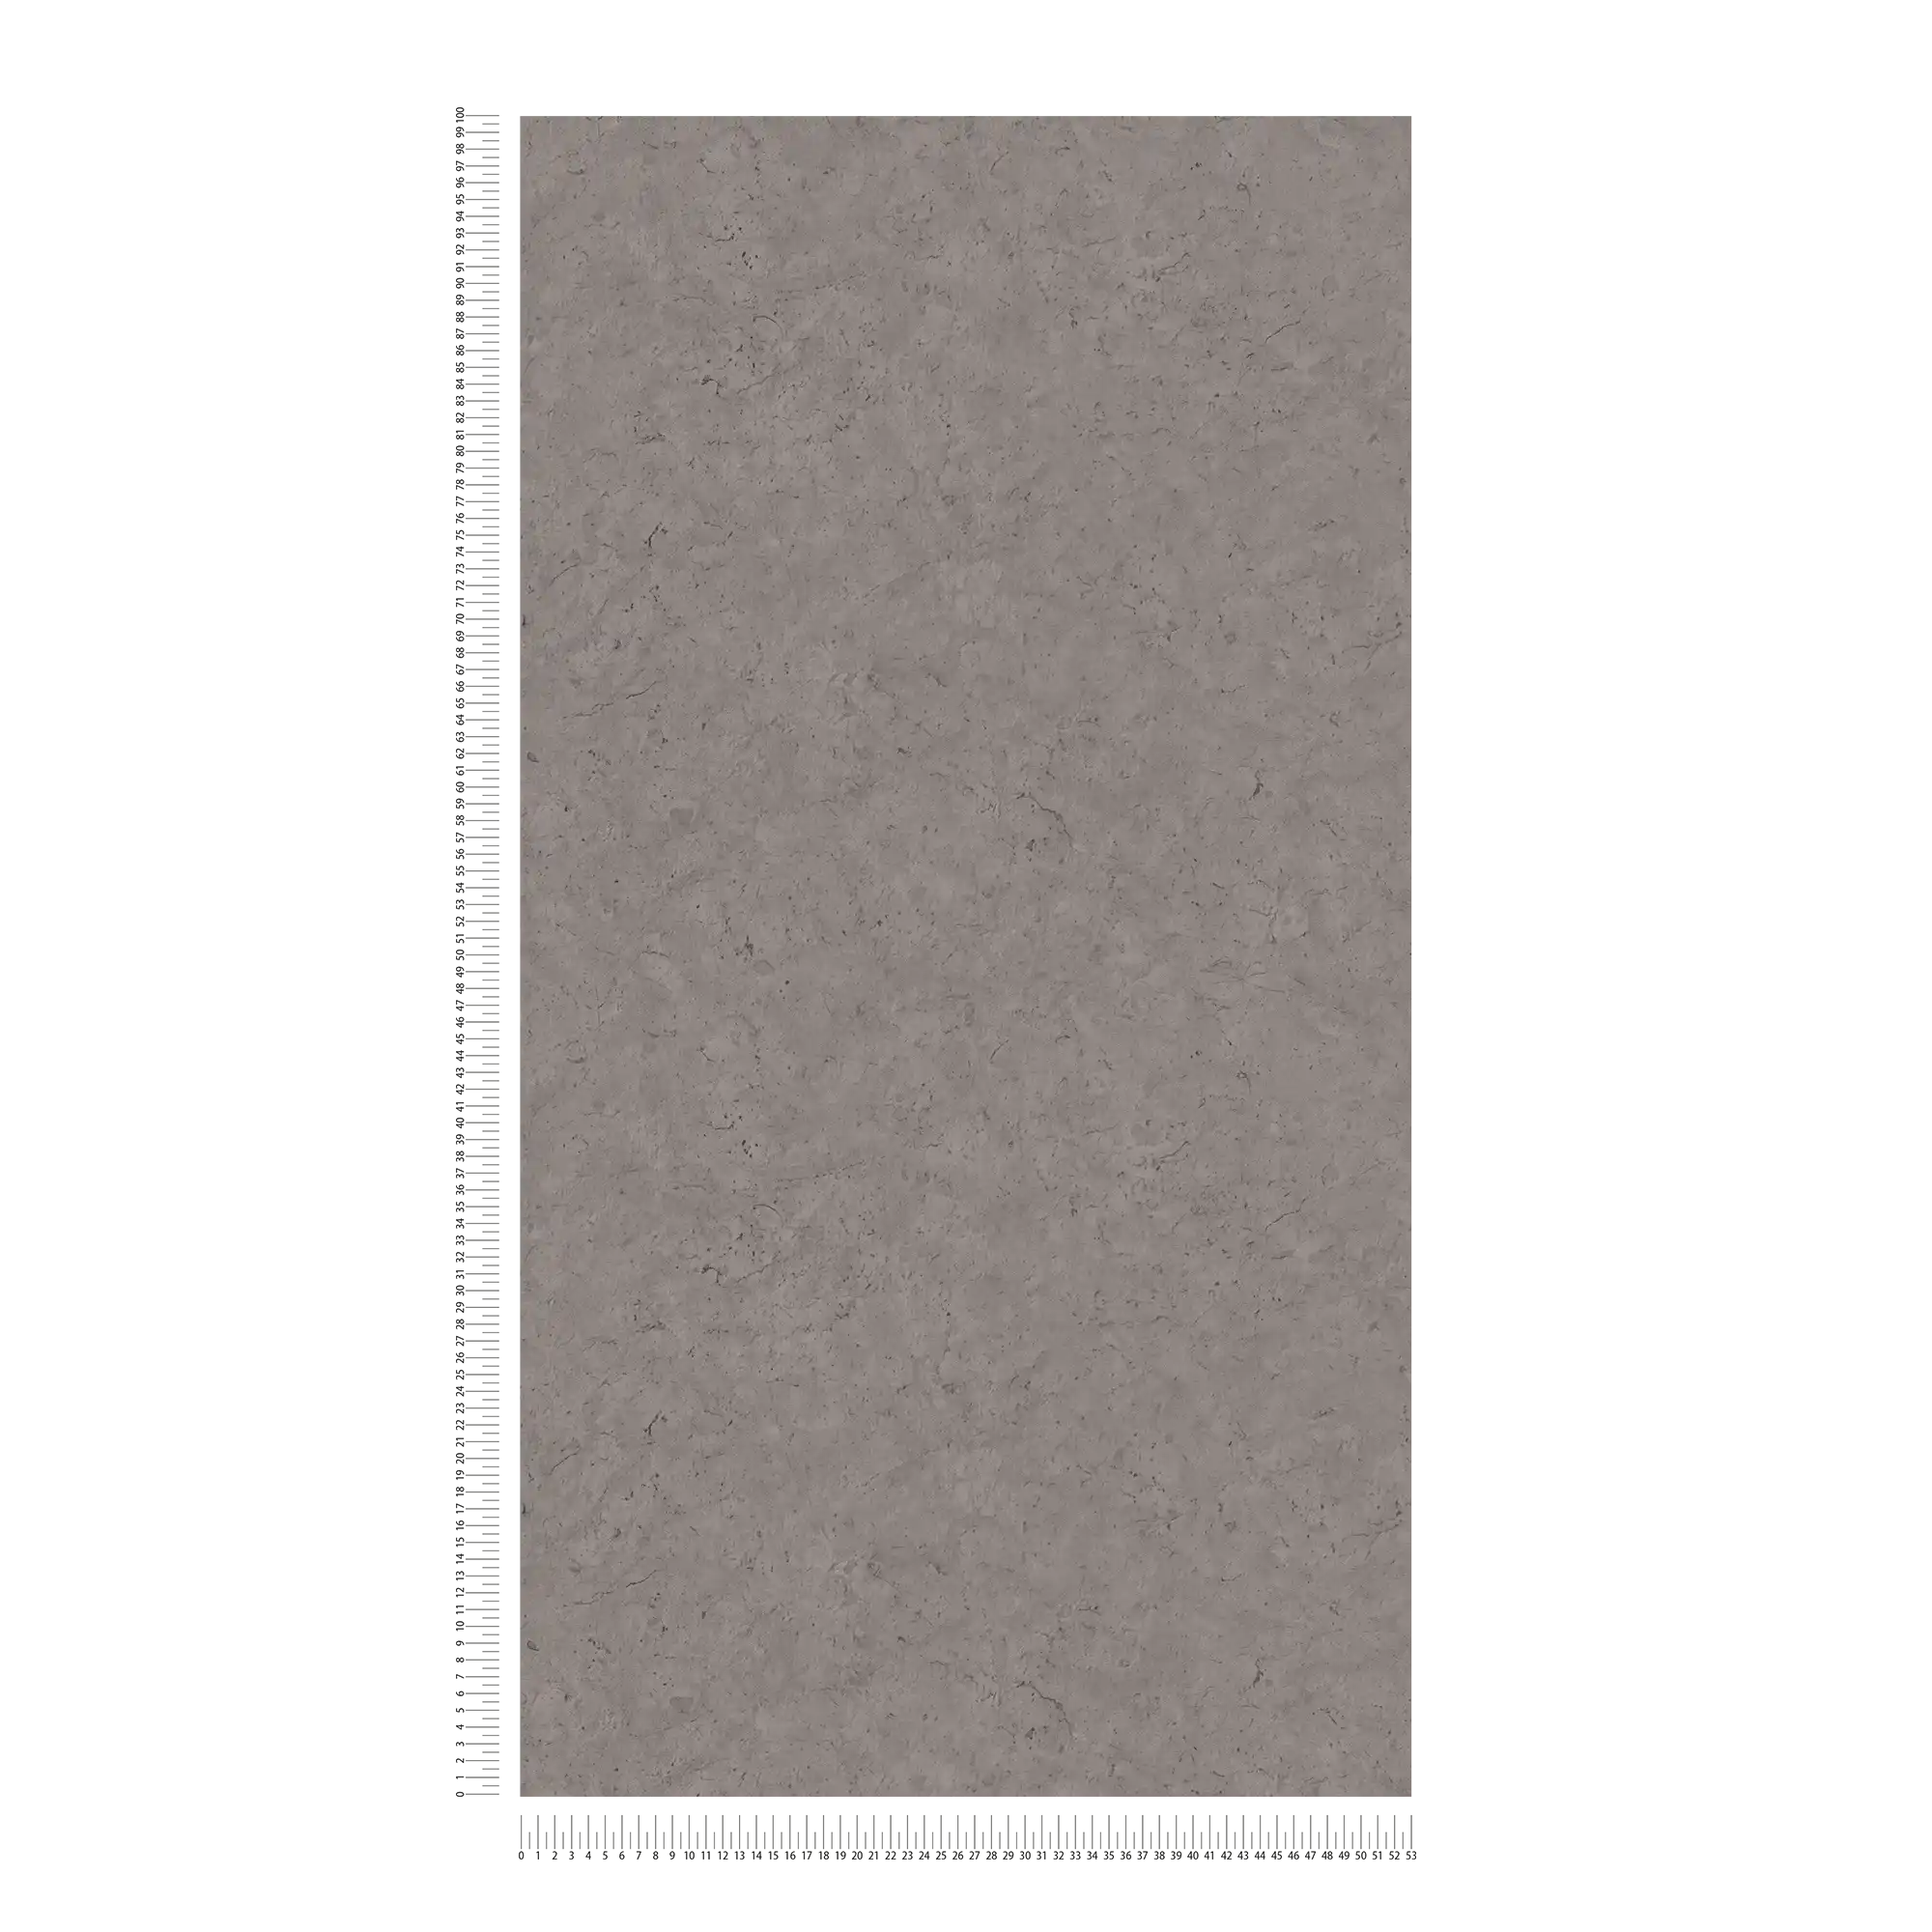             Carta da parati scura con un sottile effetto cemento - grigio
        